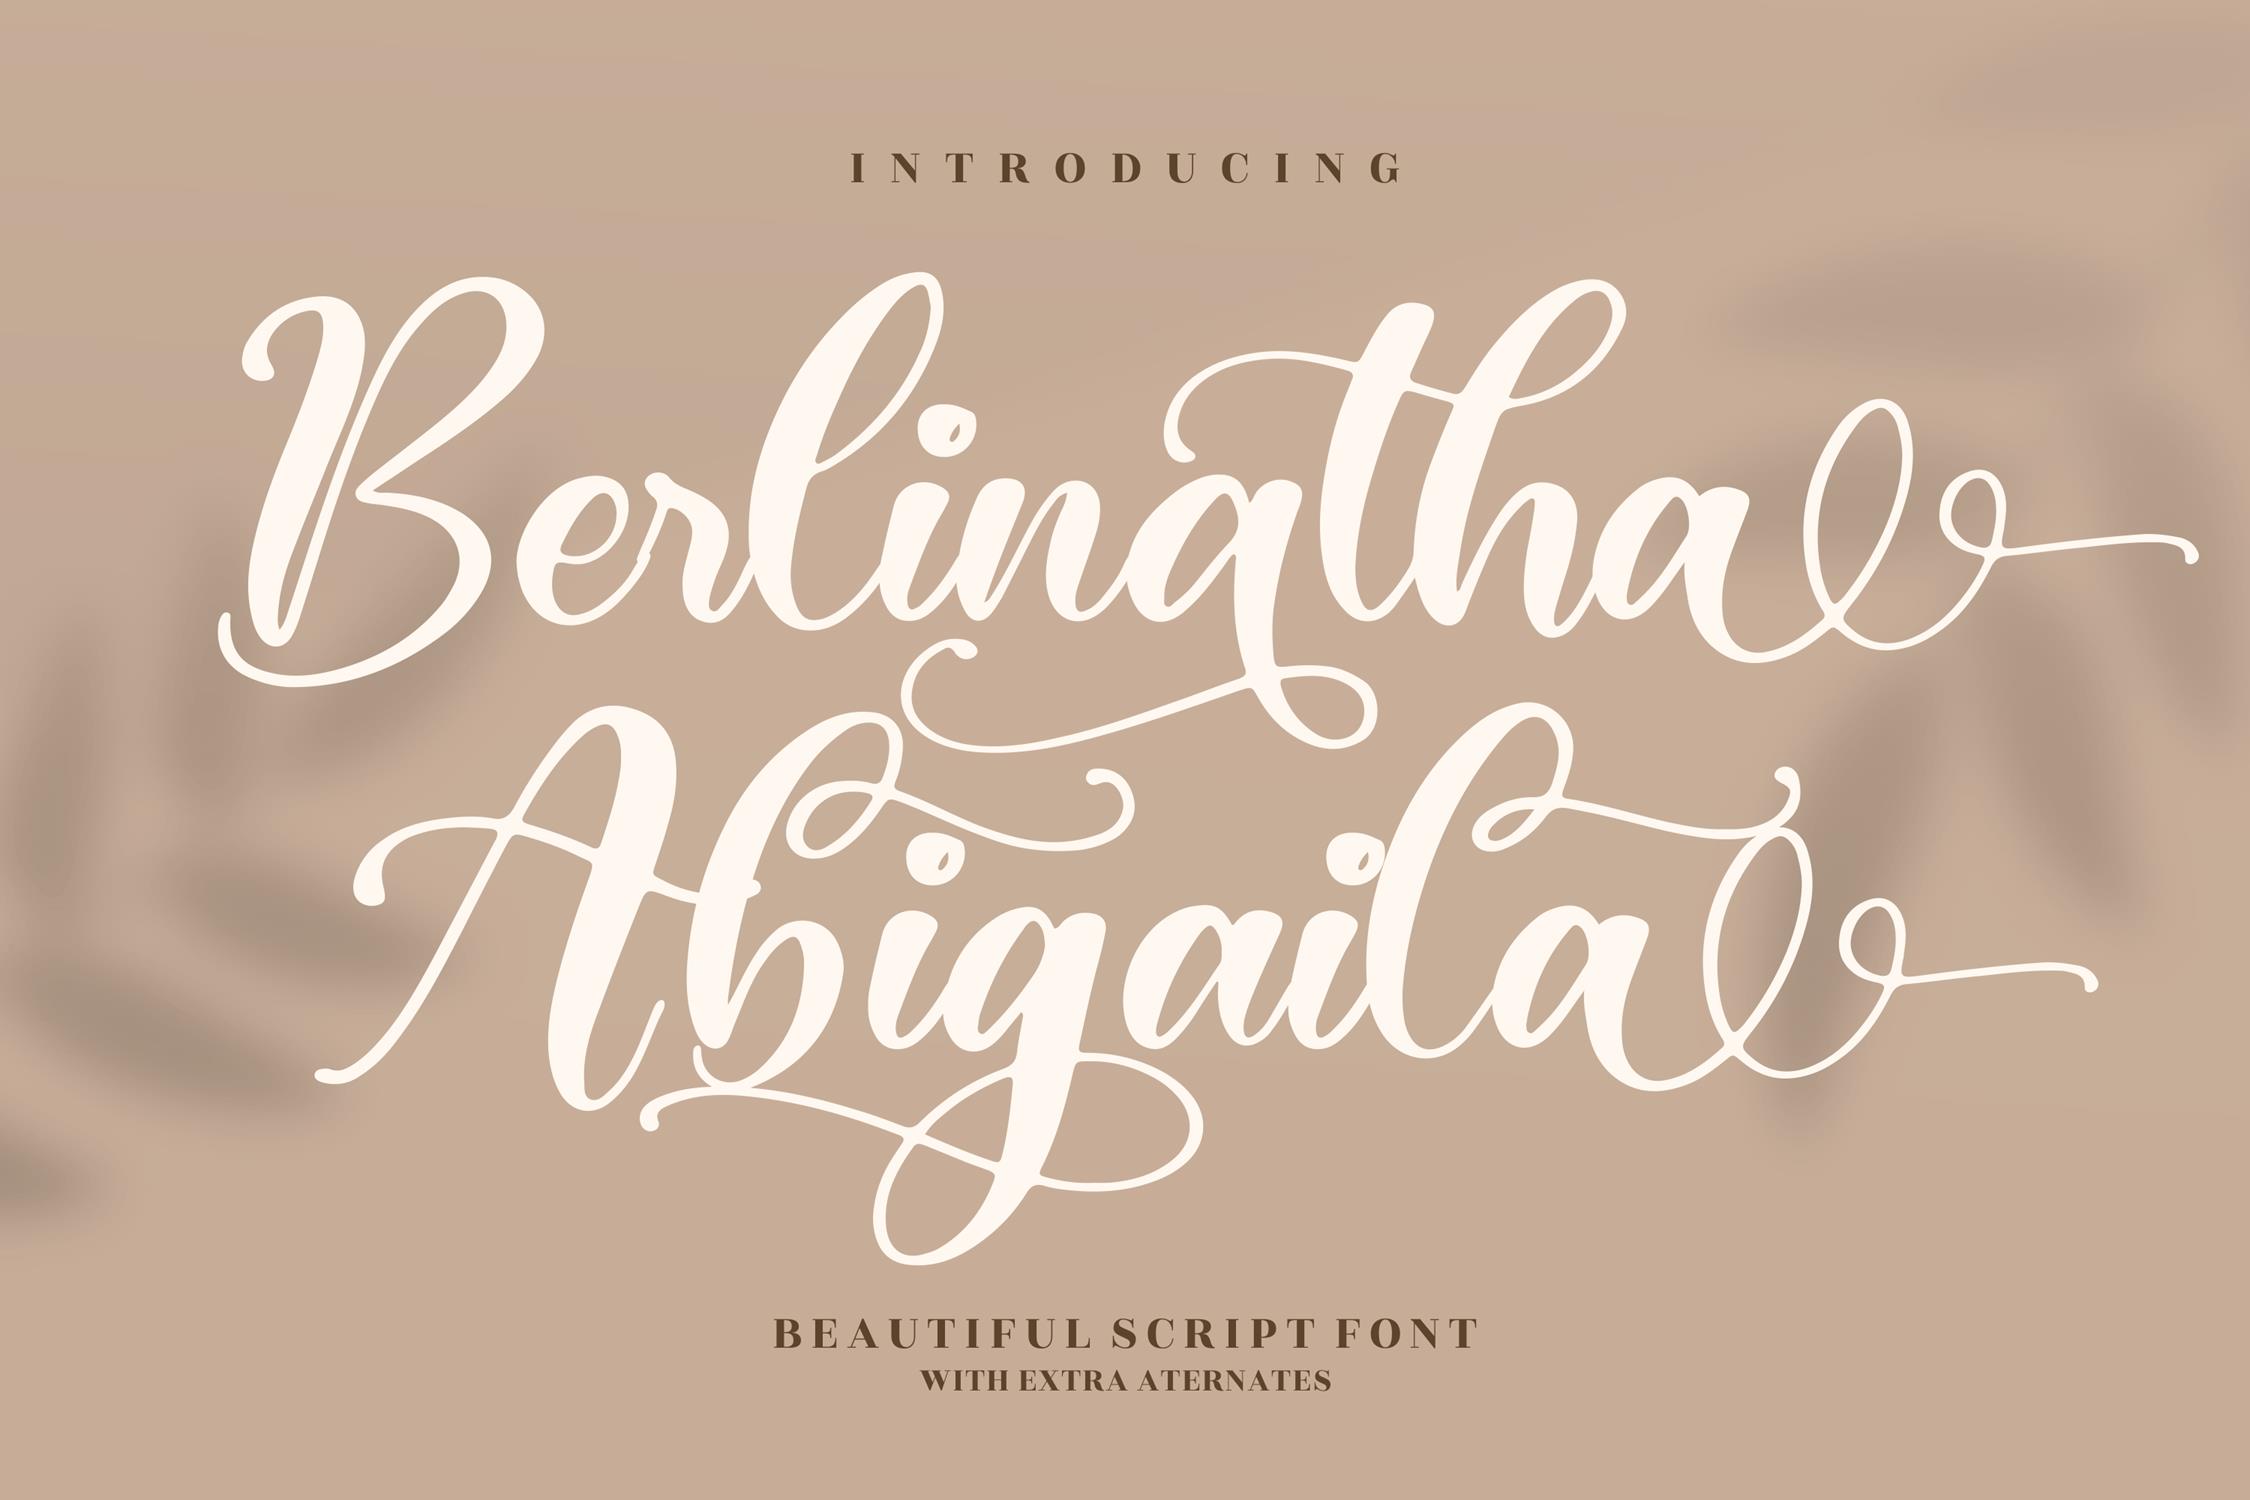 Berlinatha Abigaila Script Font